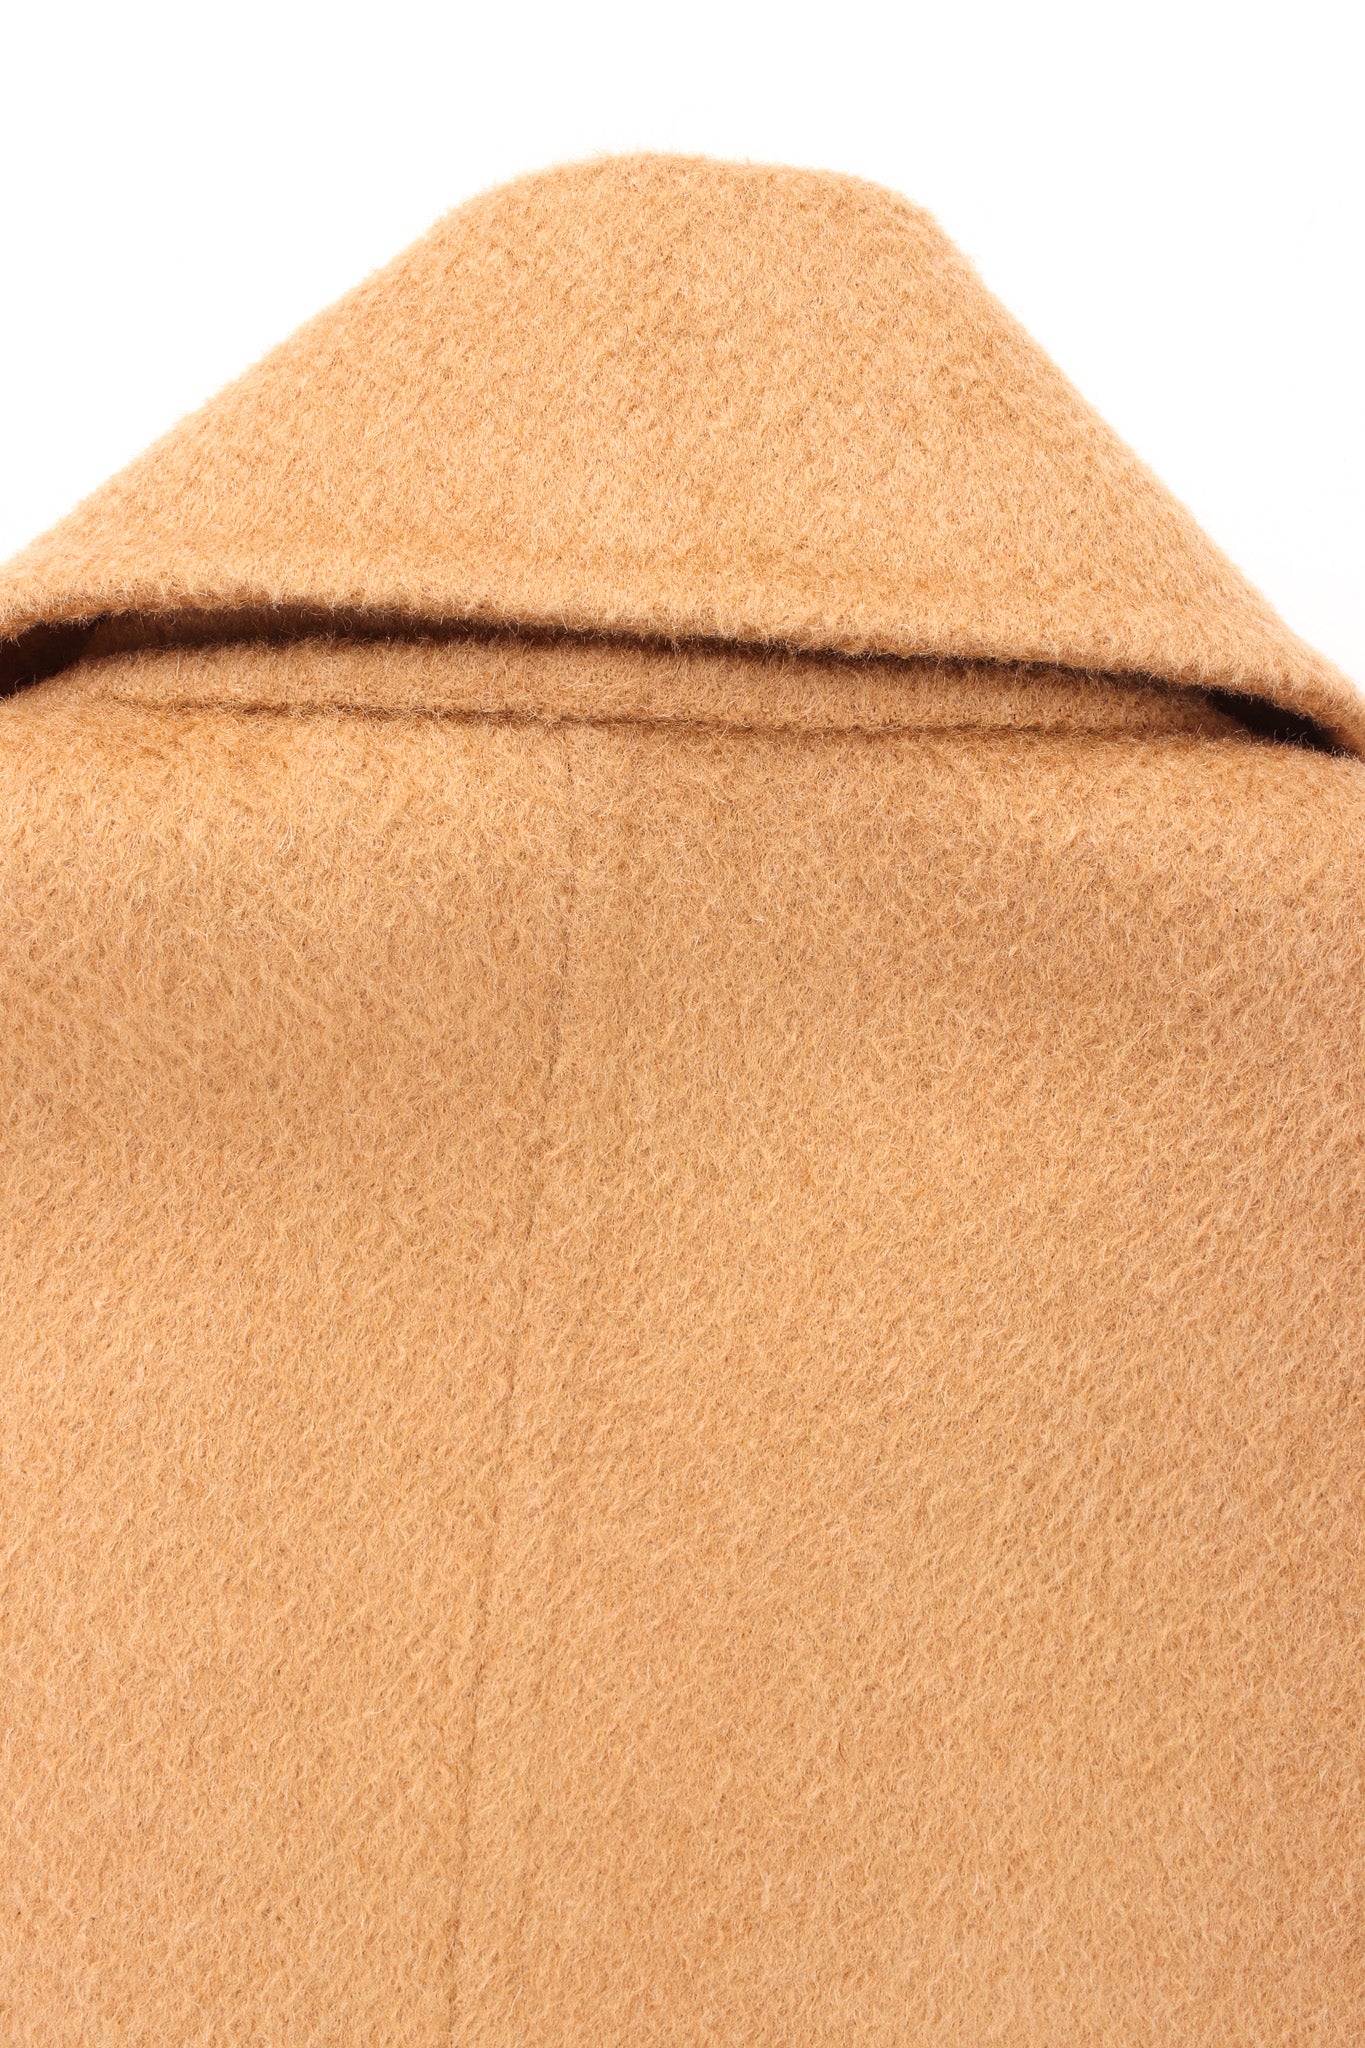 Vintage Michael Kors Camel Cashmere Jacket & Skirt Set jacket back collar @ Recess LA